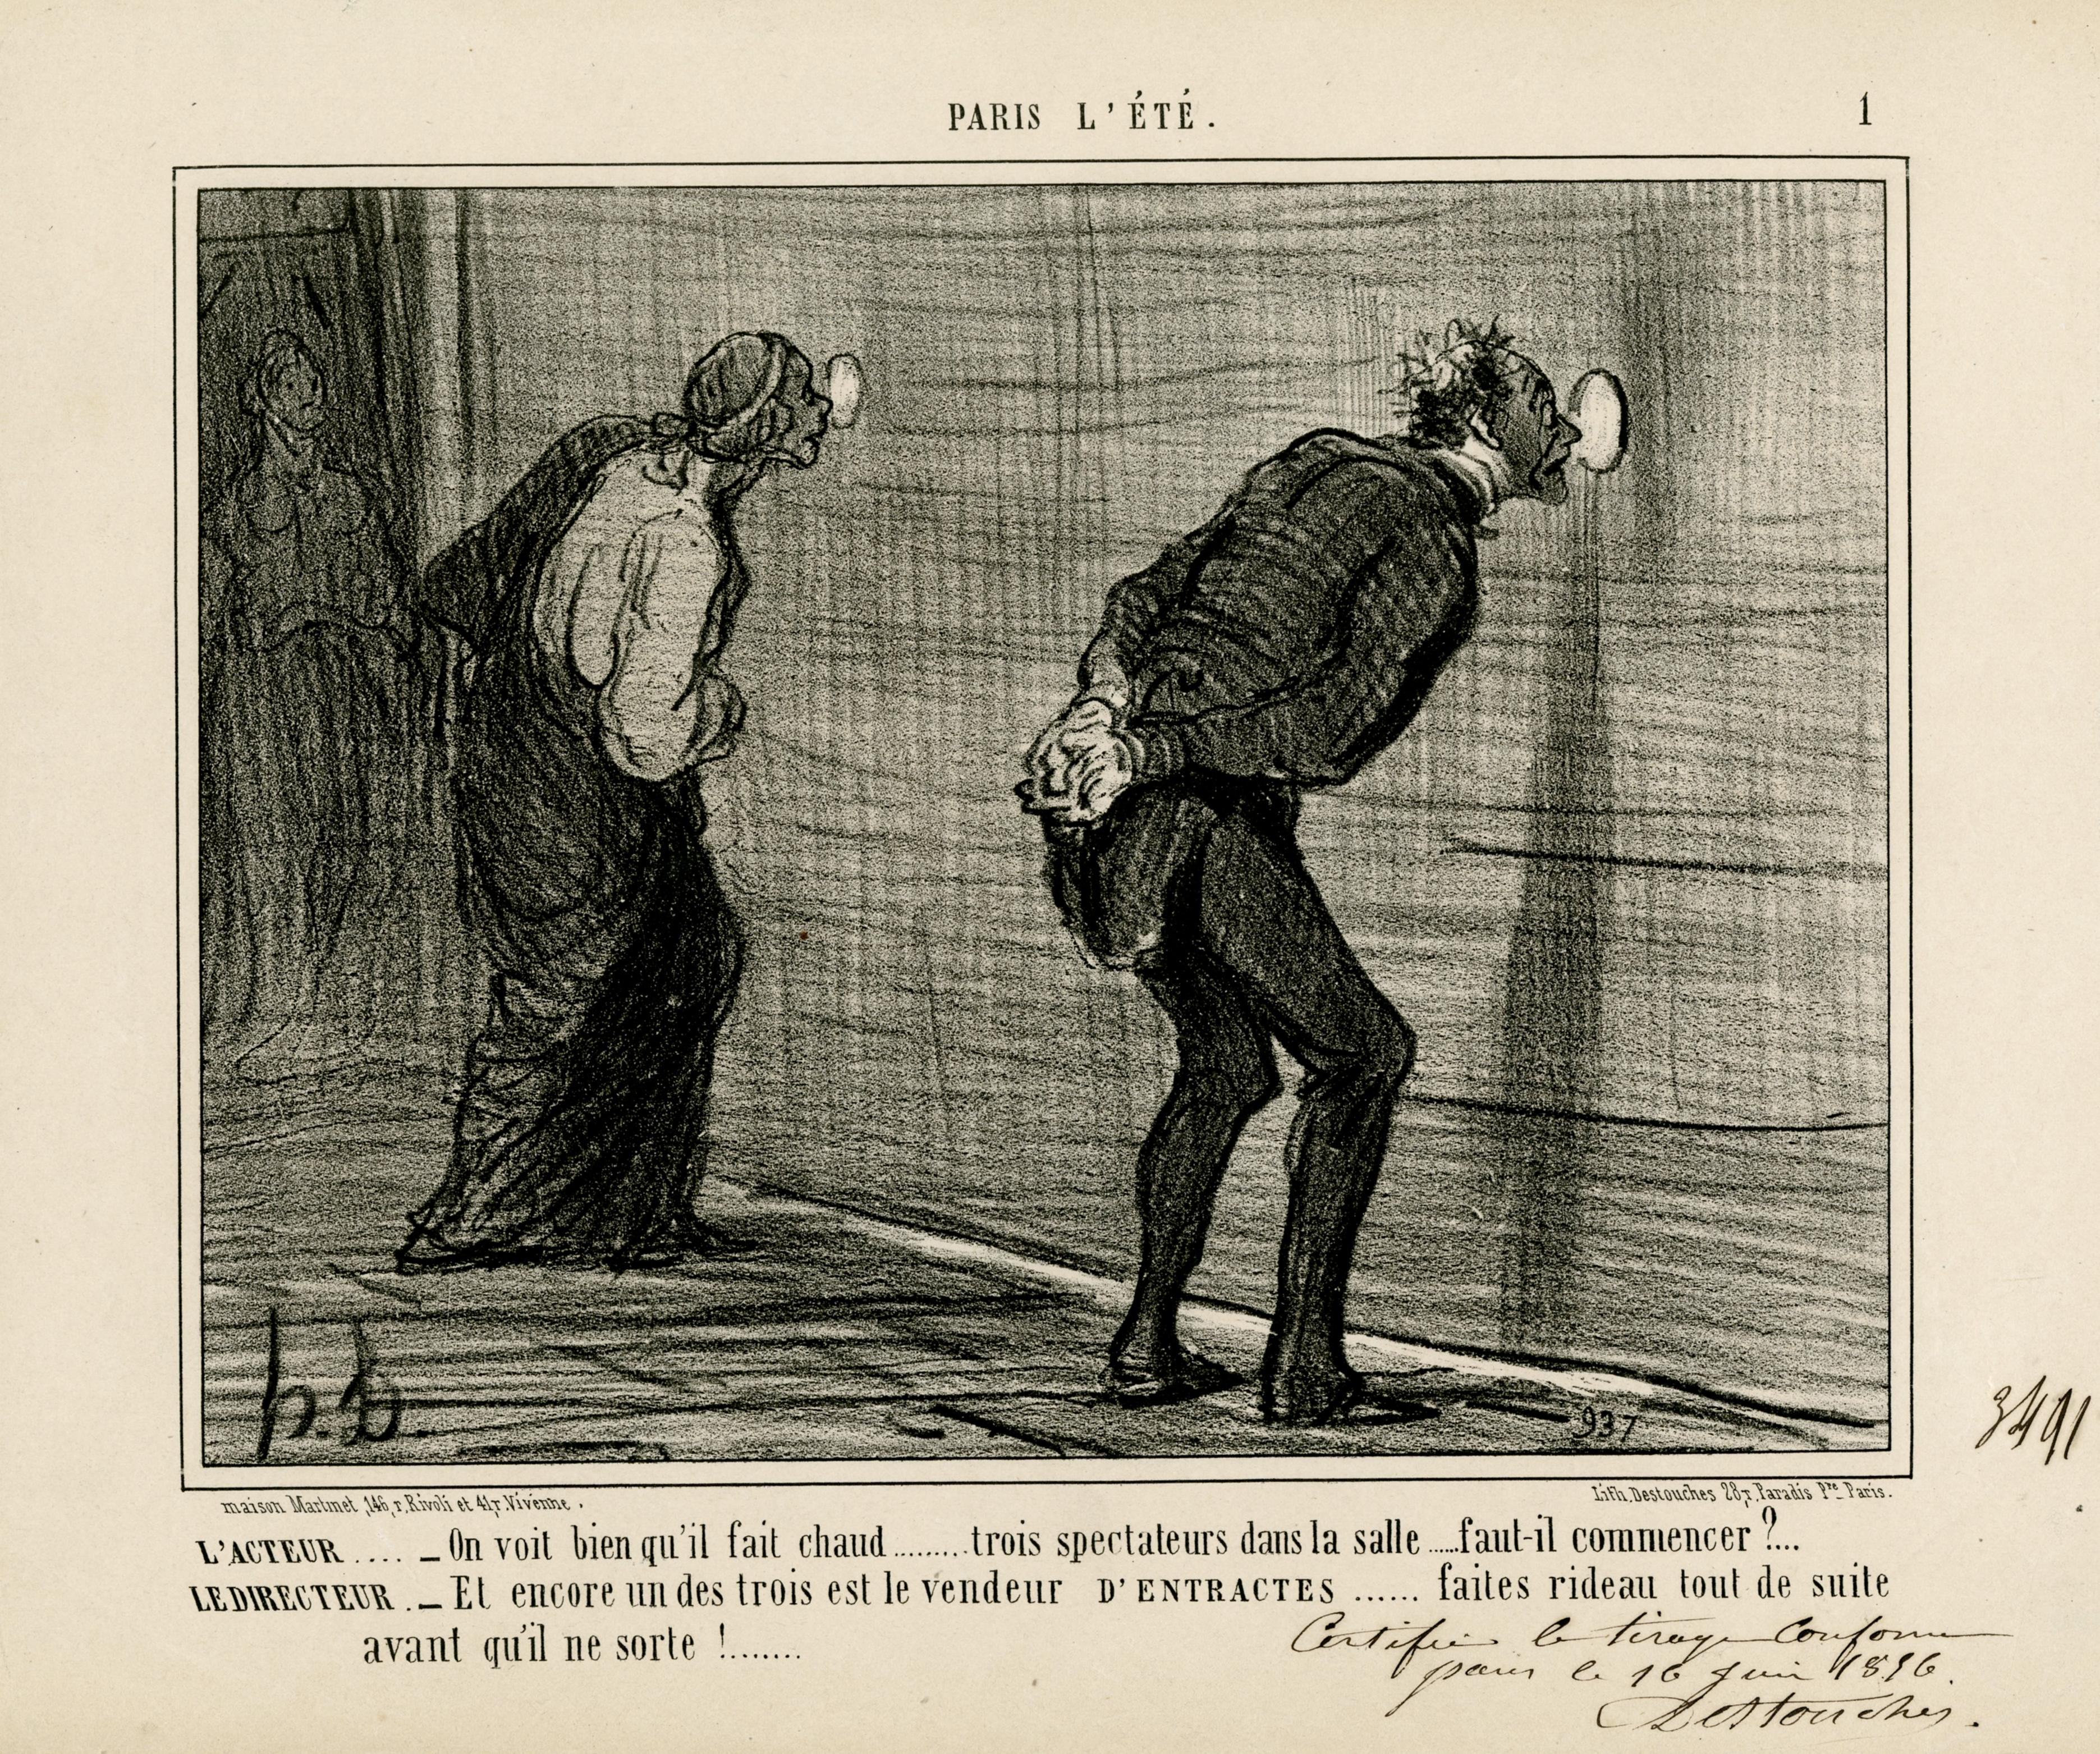 Figurative Print Honoré Daumier - L'ACTEUR . . . - On voit bien qu'il fait chaud... trois spectateurs